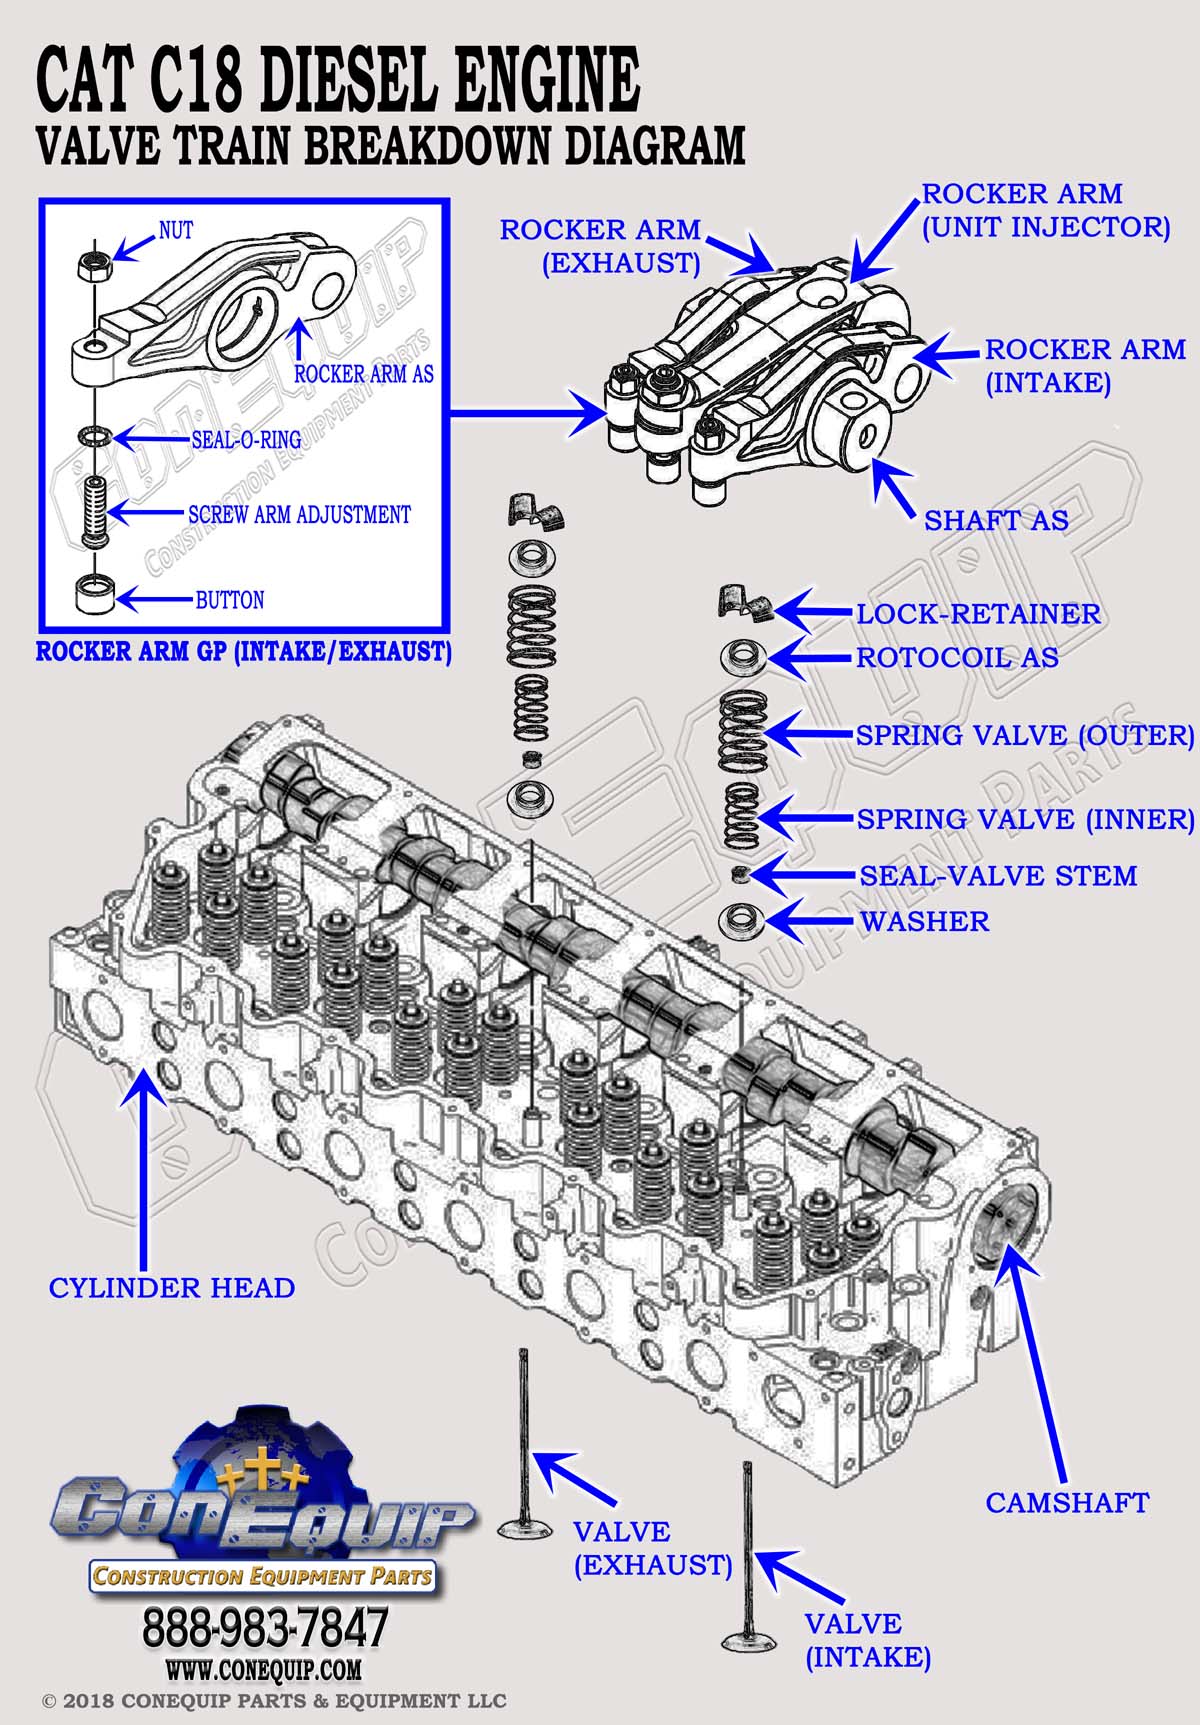 Cat C18 valve train diagram